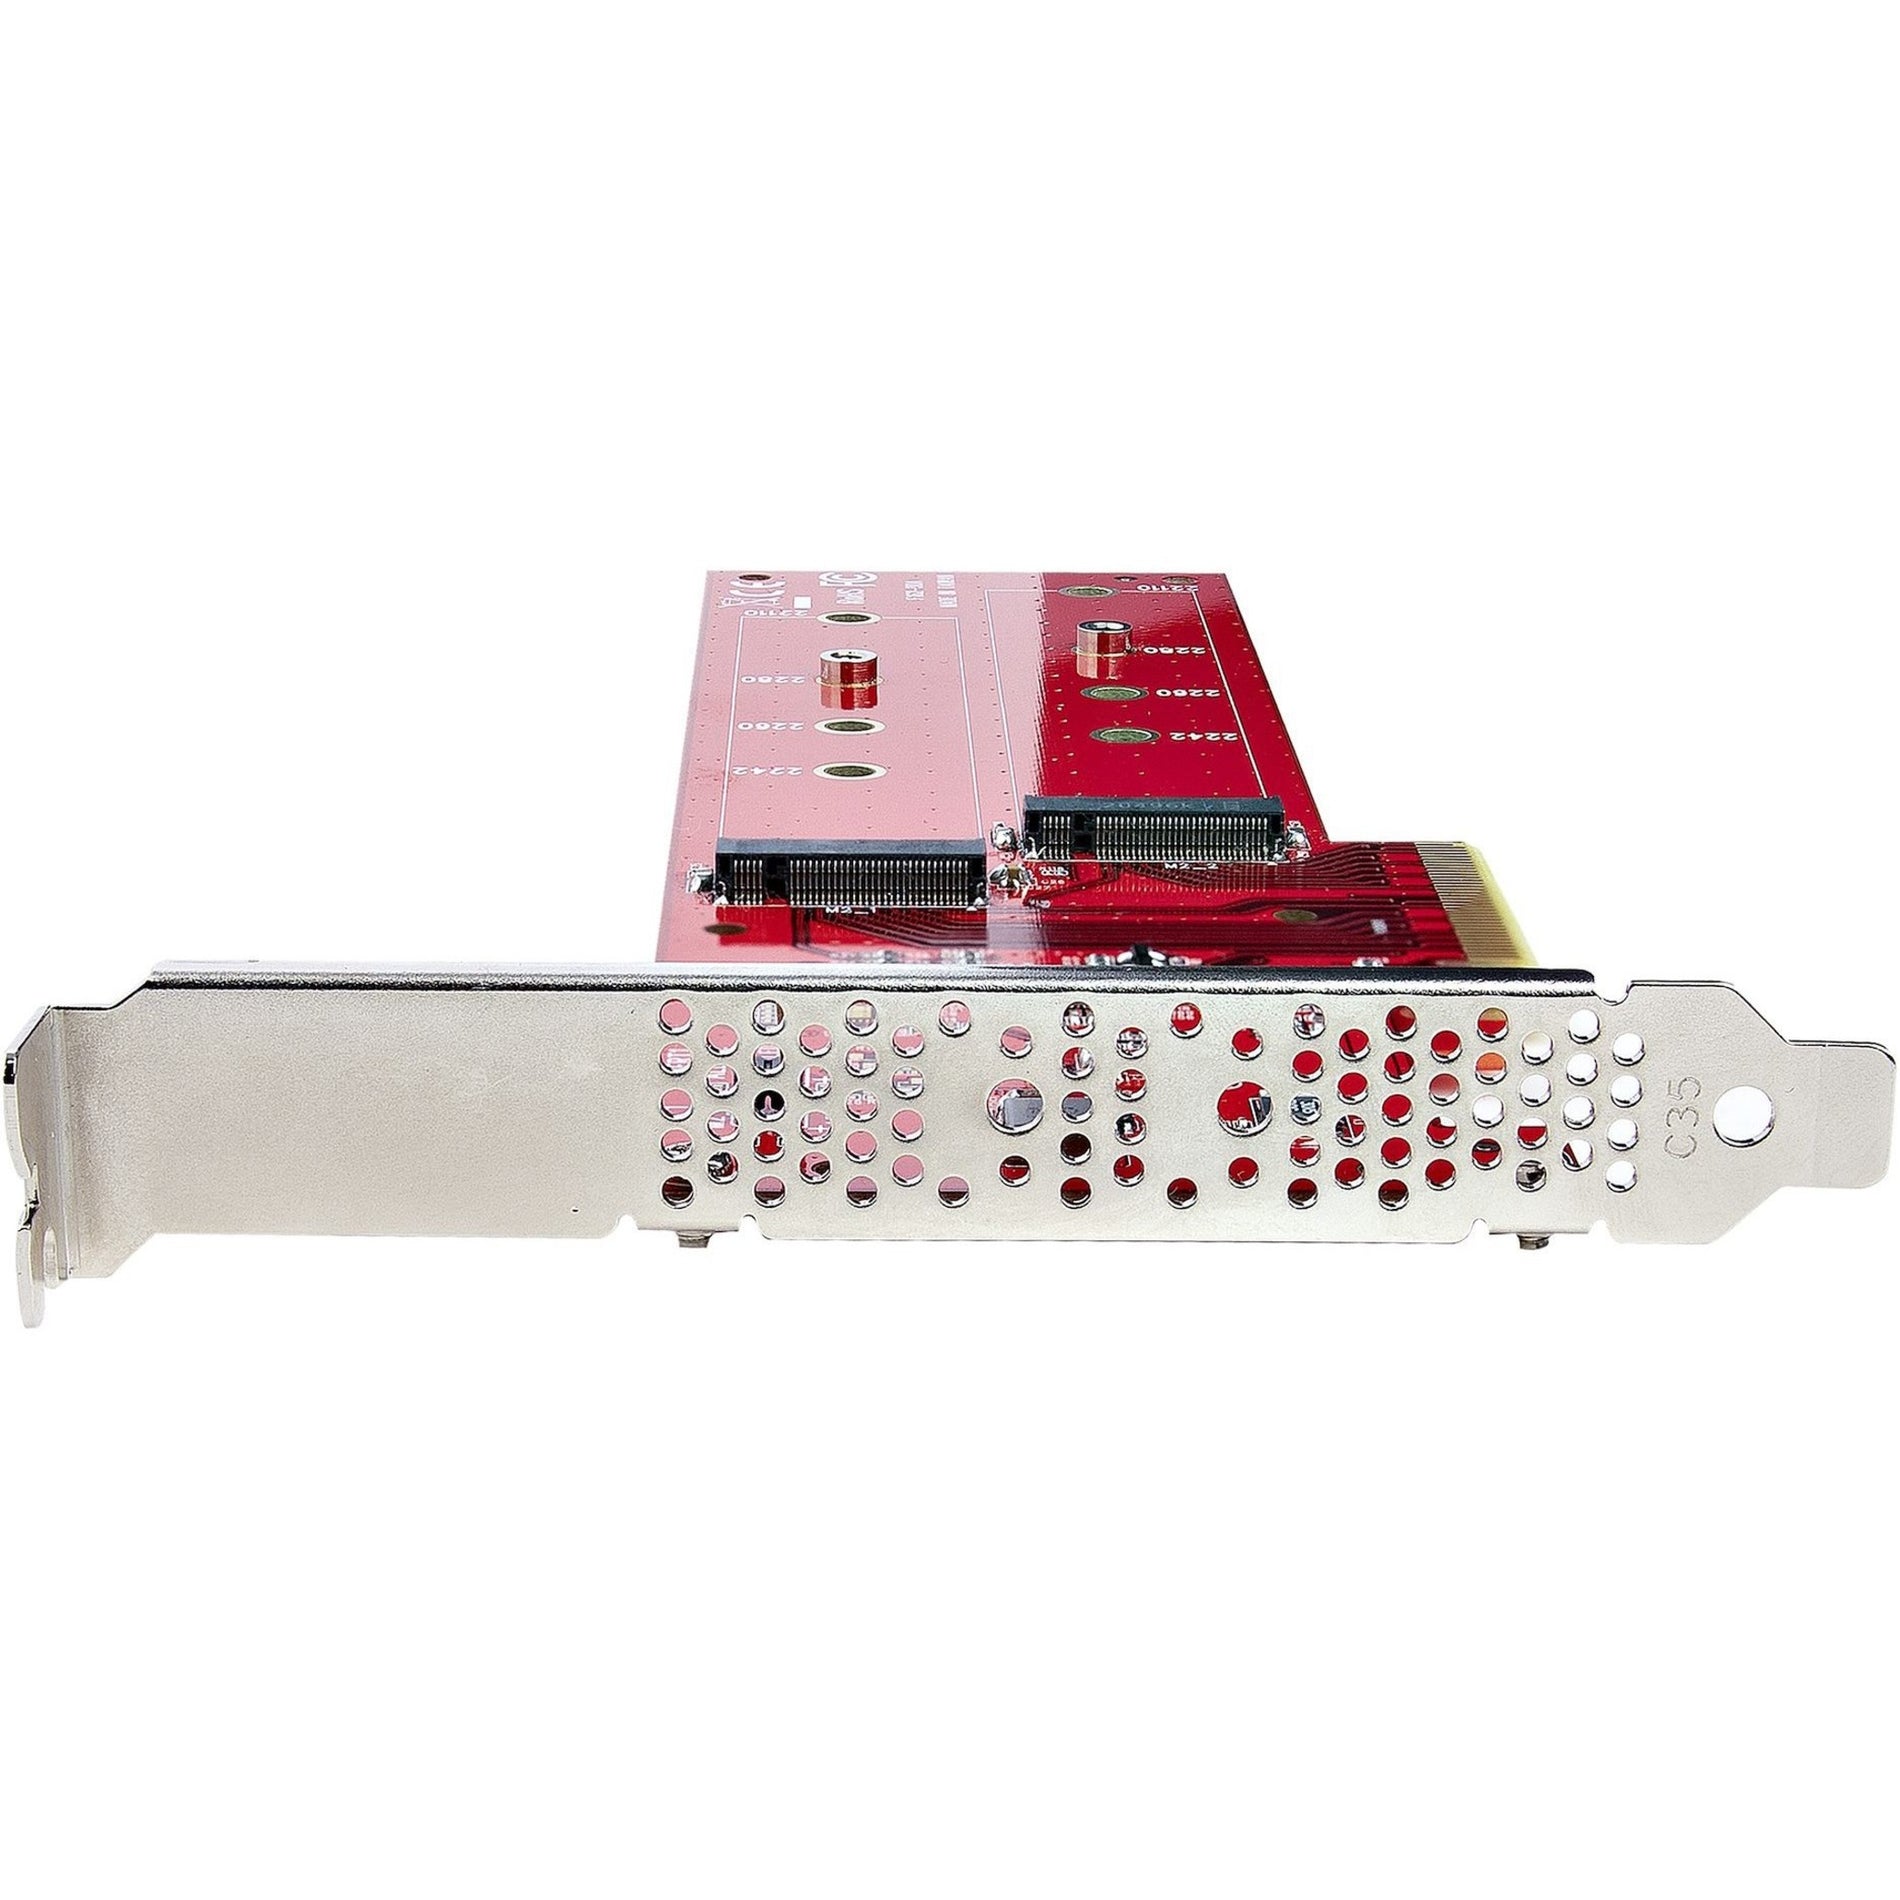 StarTech.com DUAL-M2-PCIE-CARD-B PCIe vers Adaptateur carte M.2 Double NVMe ou AHCI M.2 SSD vers PCI Express 4.0 Jusqu'à 78 Go/s/lecteur Bifurcation Requise